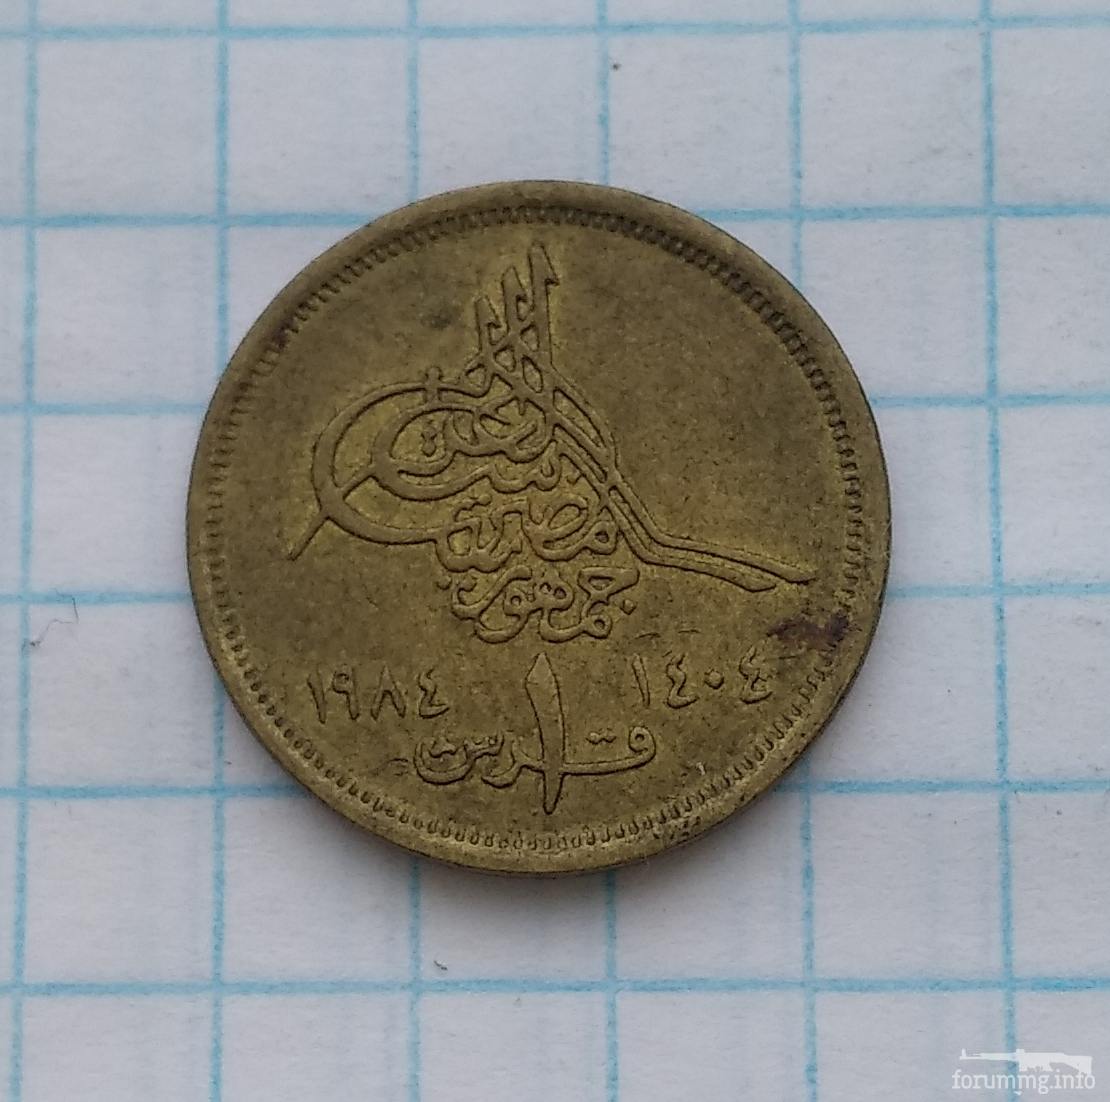 145786 - Монети Єгипту, подарунковий набір.